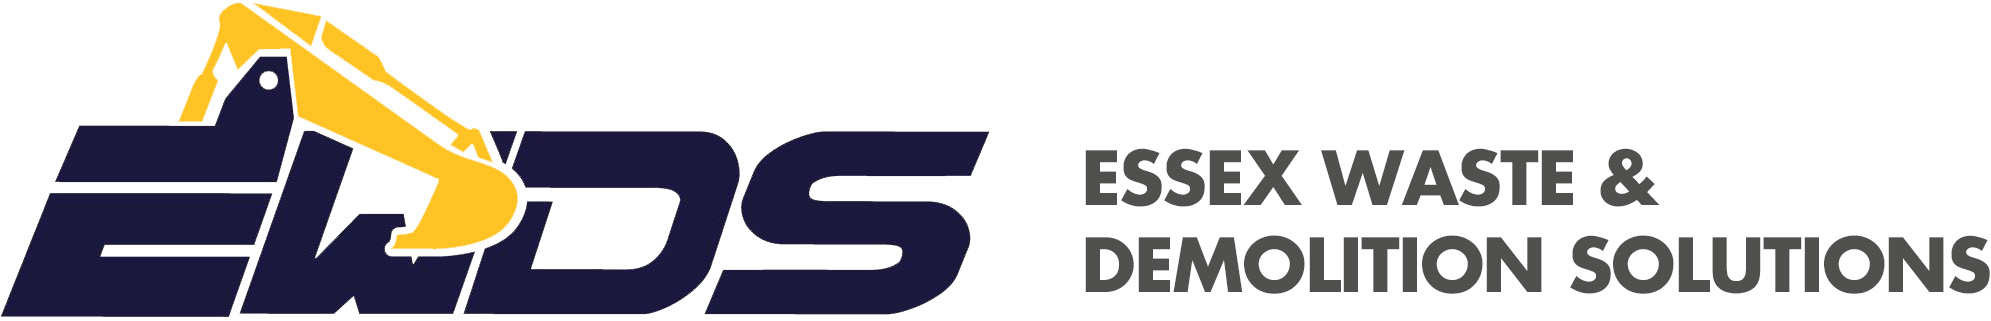 Essex Waste & Demolition Solutions Ltd